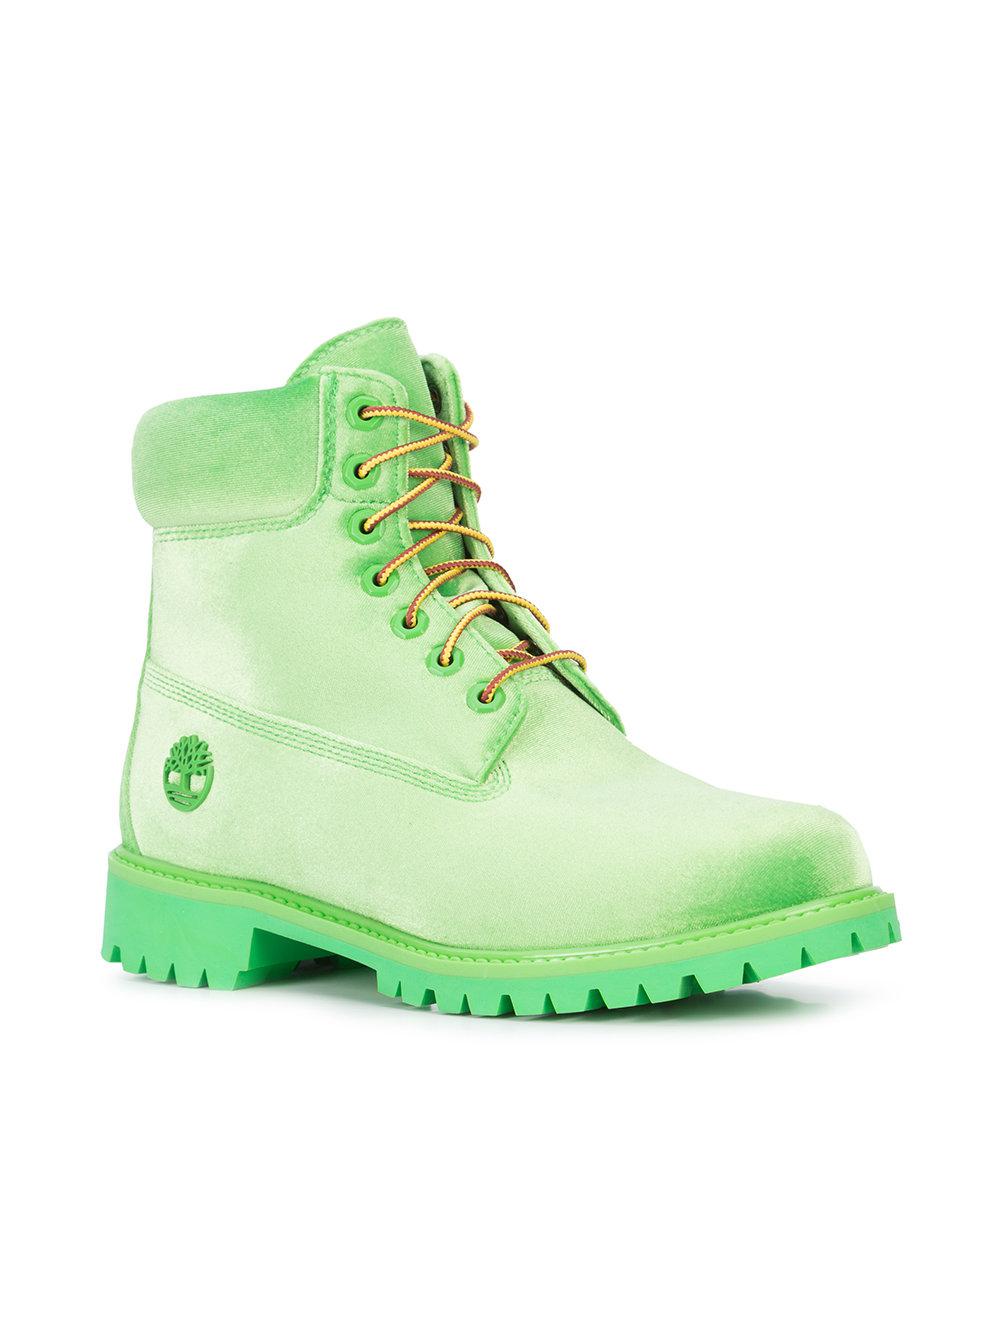 Off-White c/o Virgil Abloh X Timberland Velvet Boots in Green for Men - Lyst